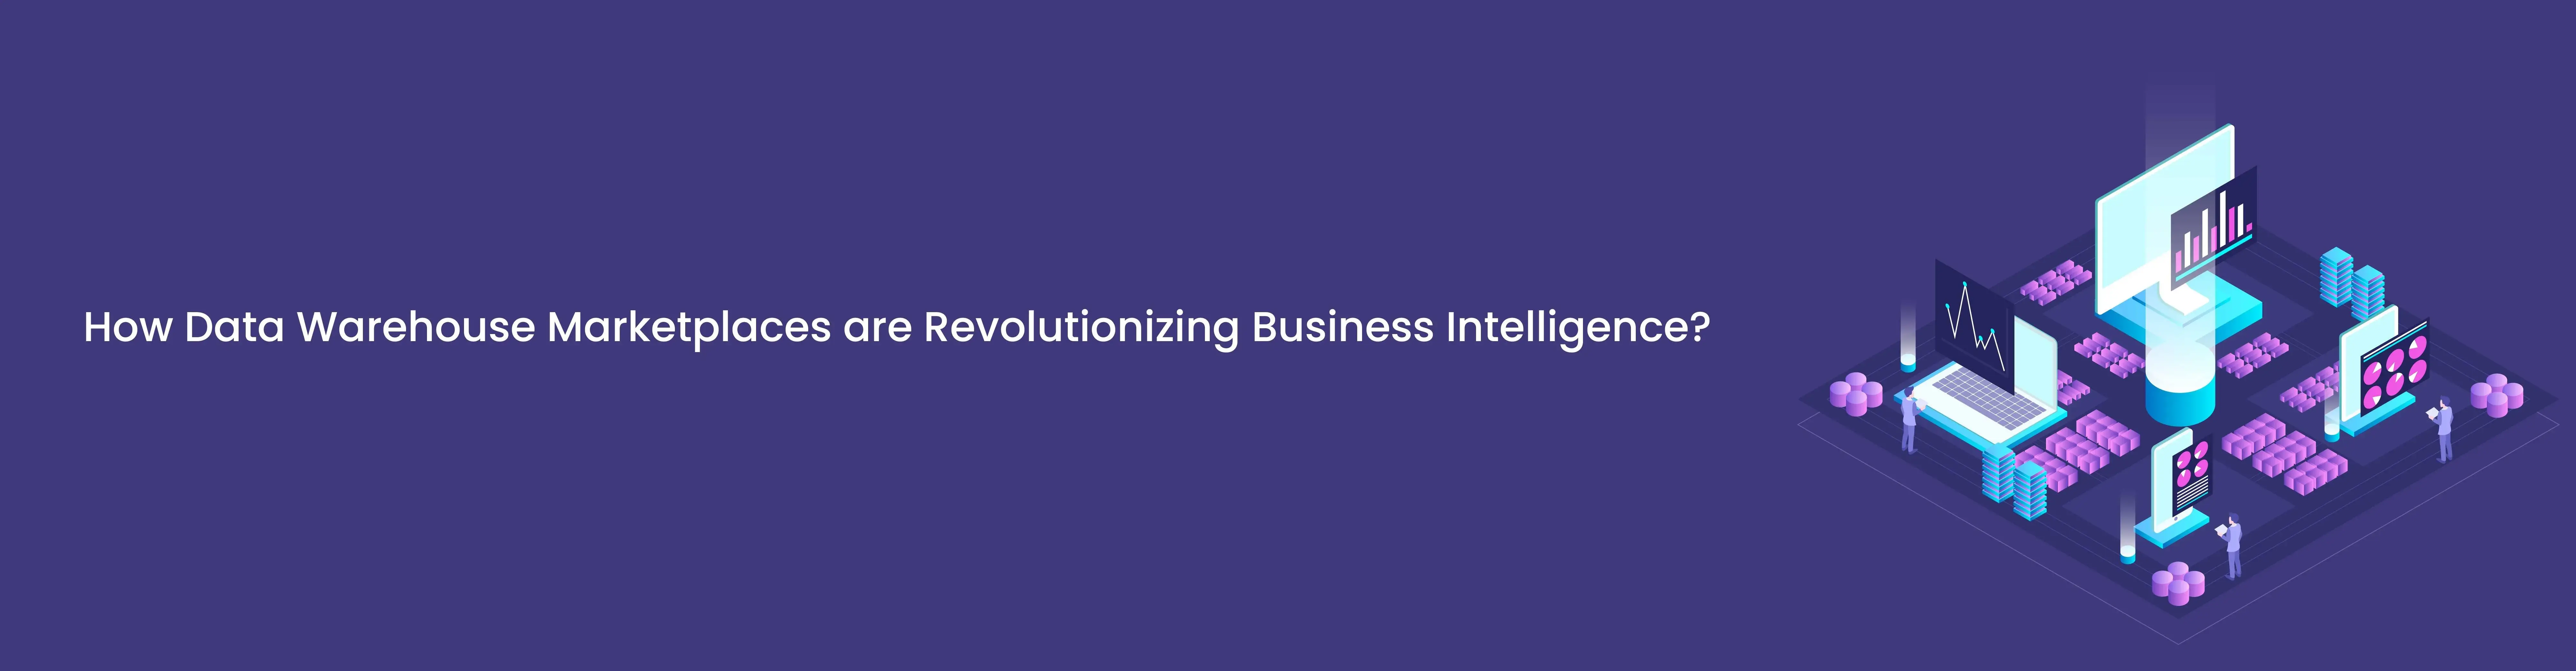 1712298959How Data Warehouse Marketplaces are Revolutionizing Business Intelligence.webp